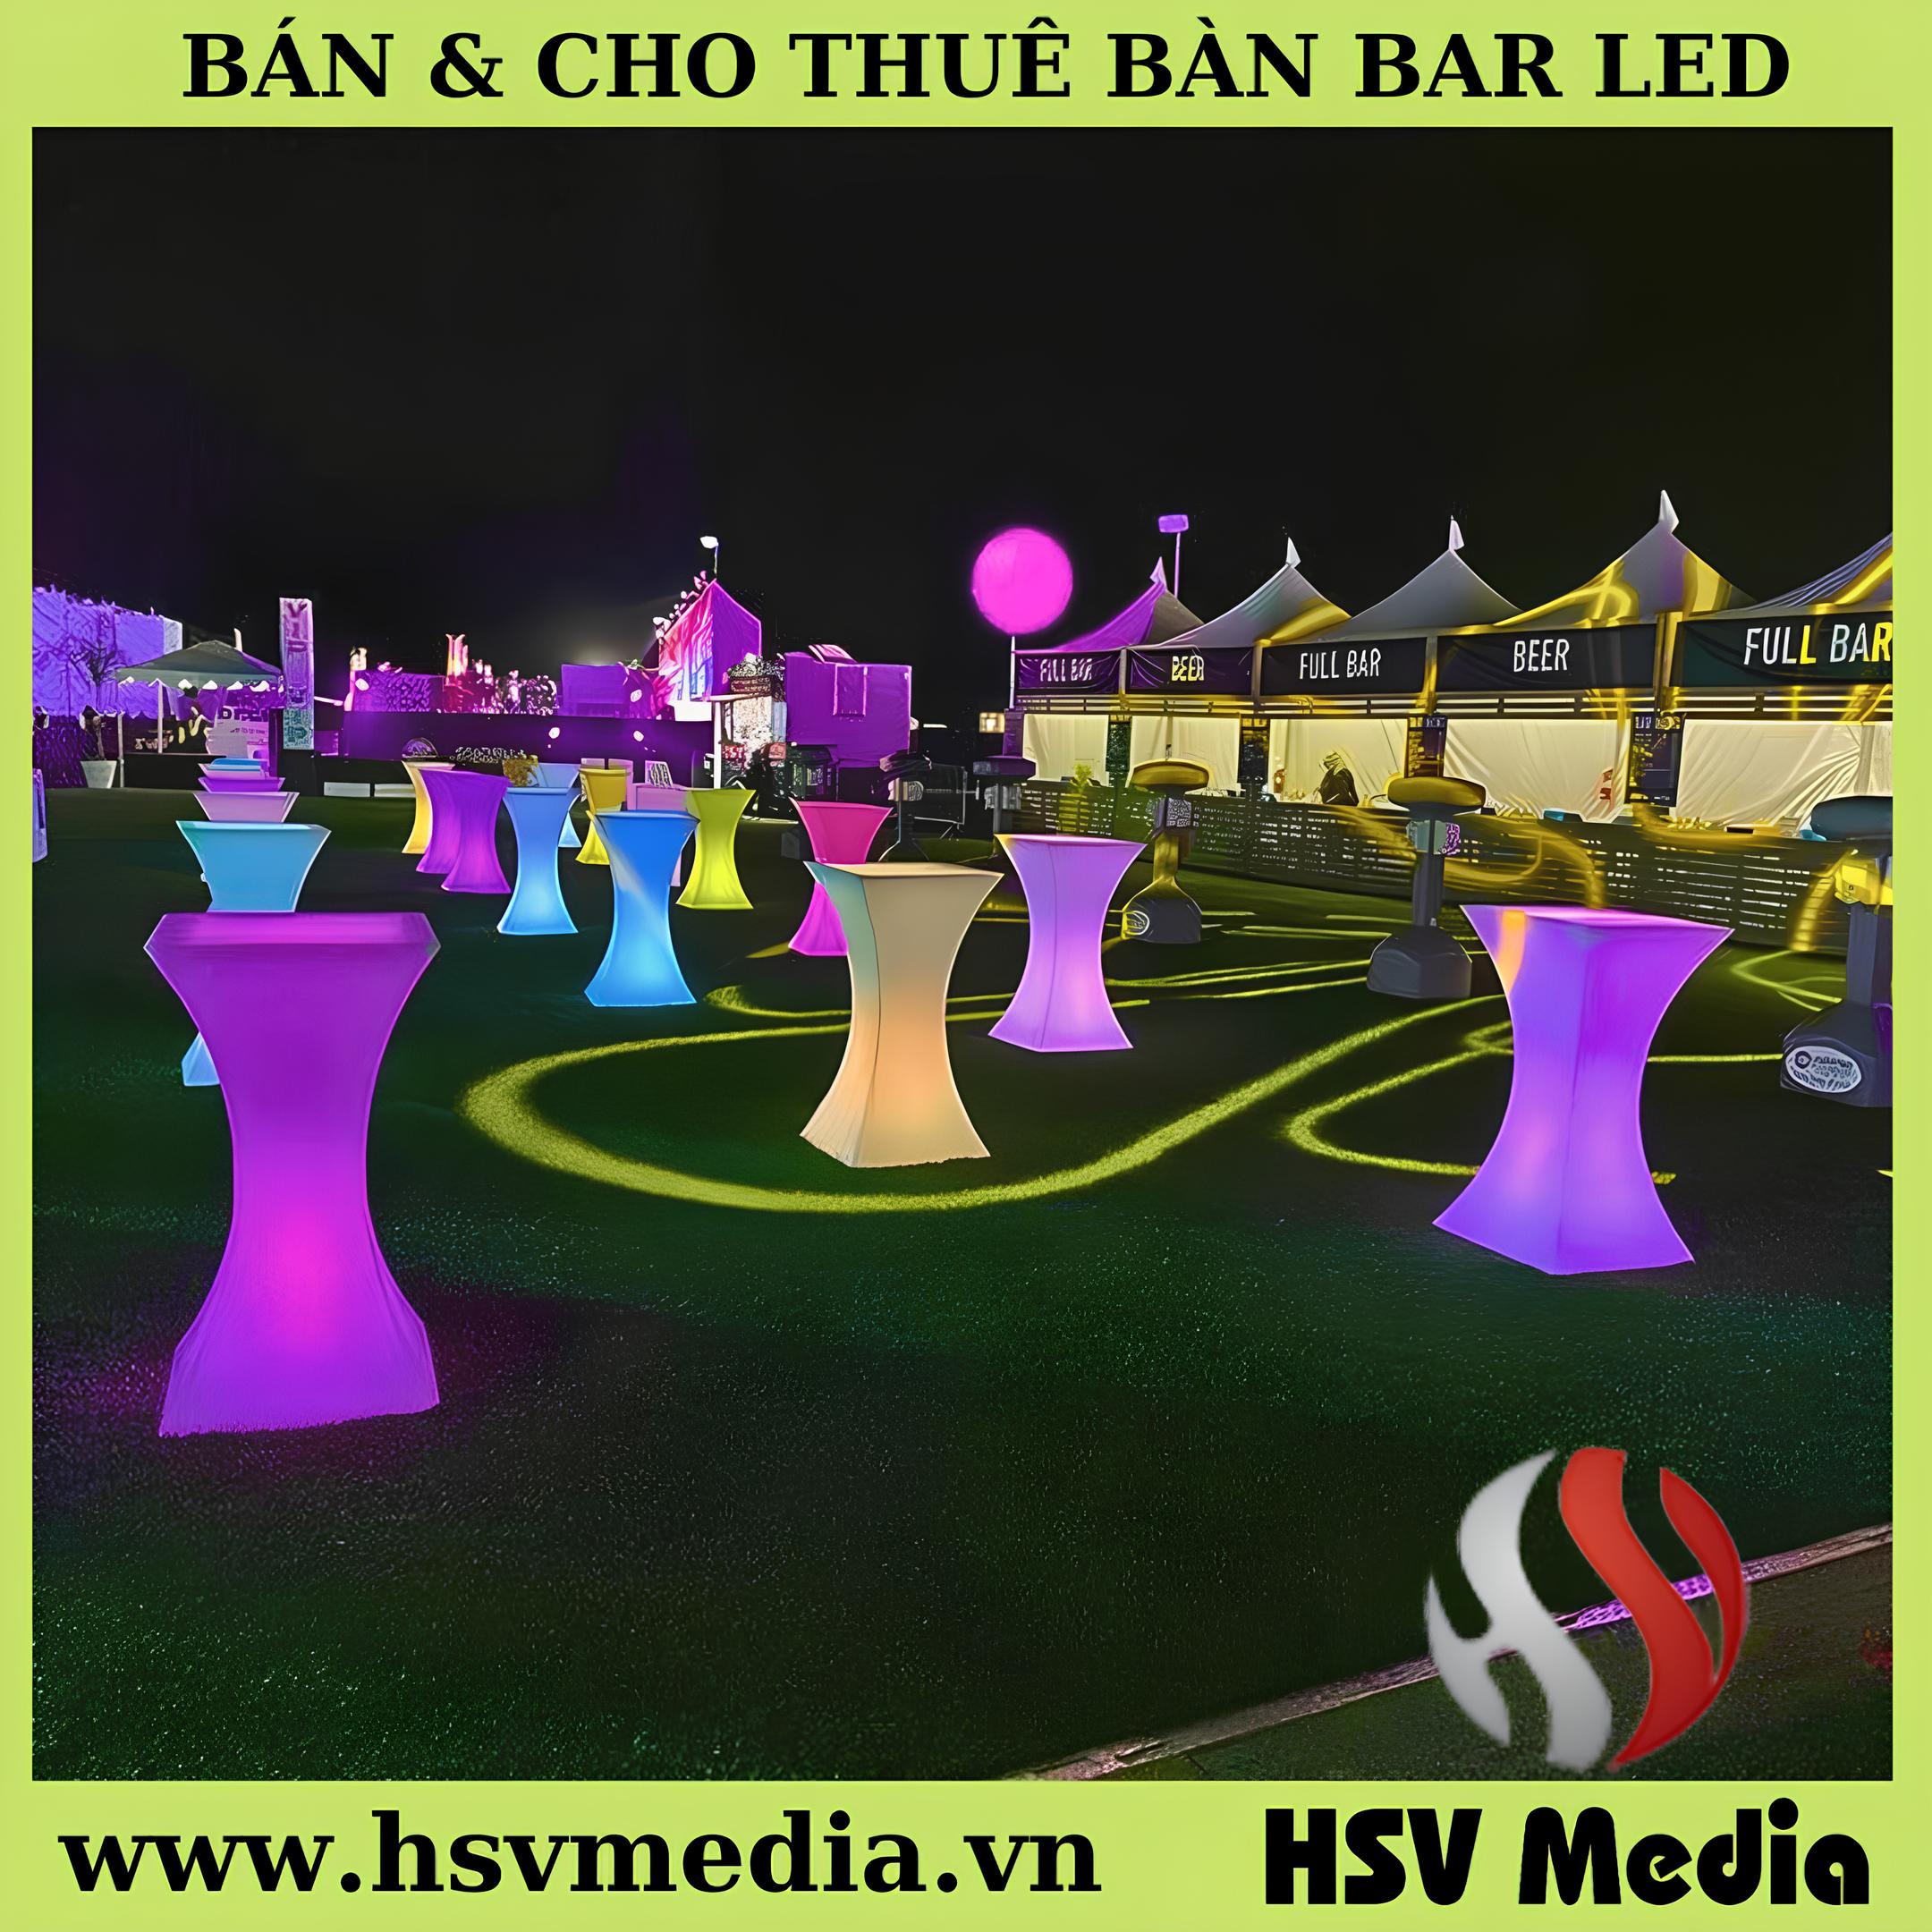 Bán & Cho Thuê Bàn ghế LED Phát Sáng Giá Rẻ Tại HCM